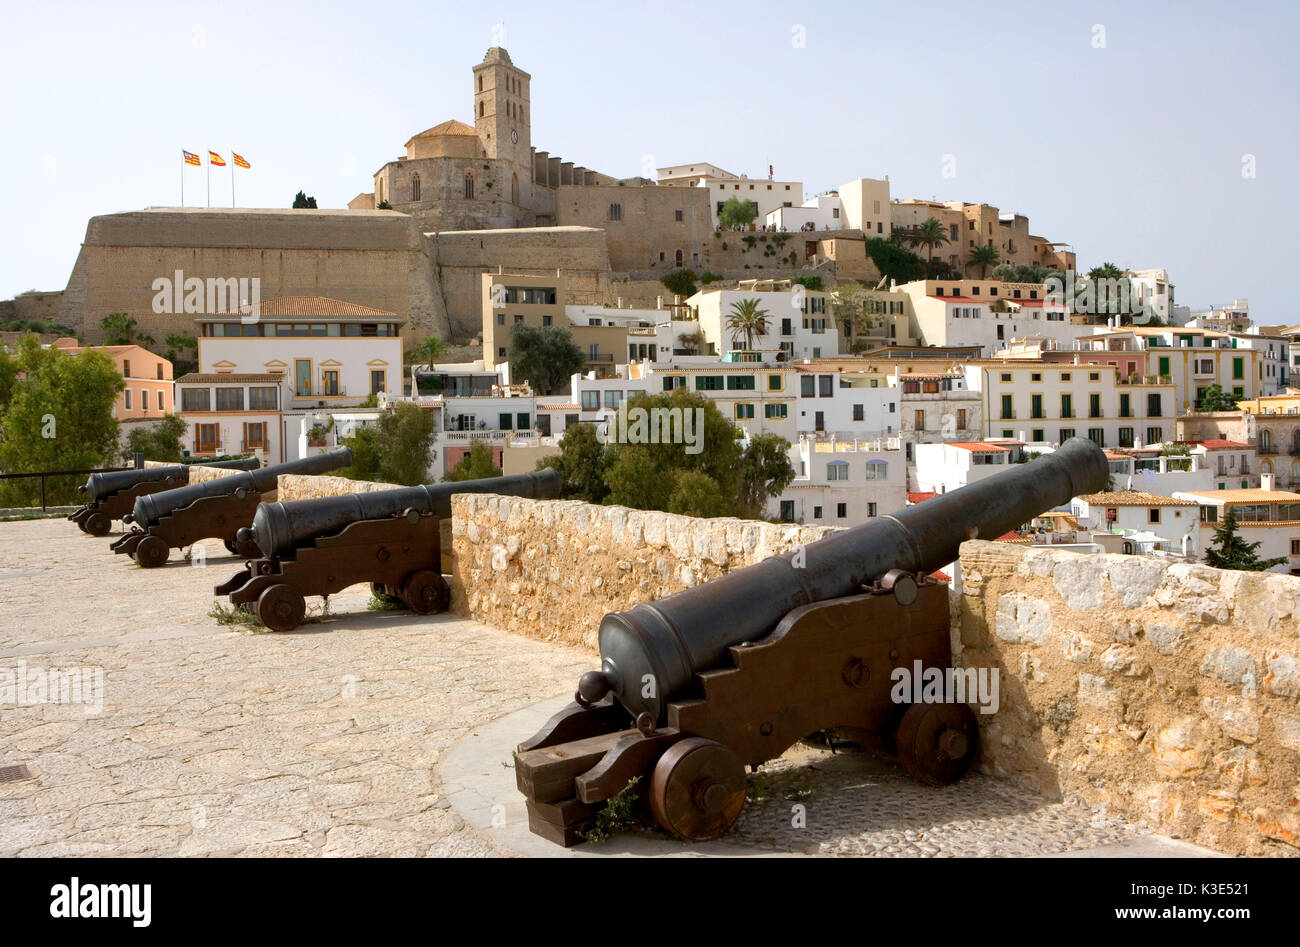 Eivissa - Hauptstadt von Ibiza - Blick auf die Altstadt Dalt Vila - Kathedrale Santa Maria de las Nieves - alte Kanonen Banque D'Images